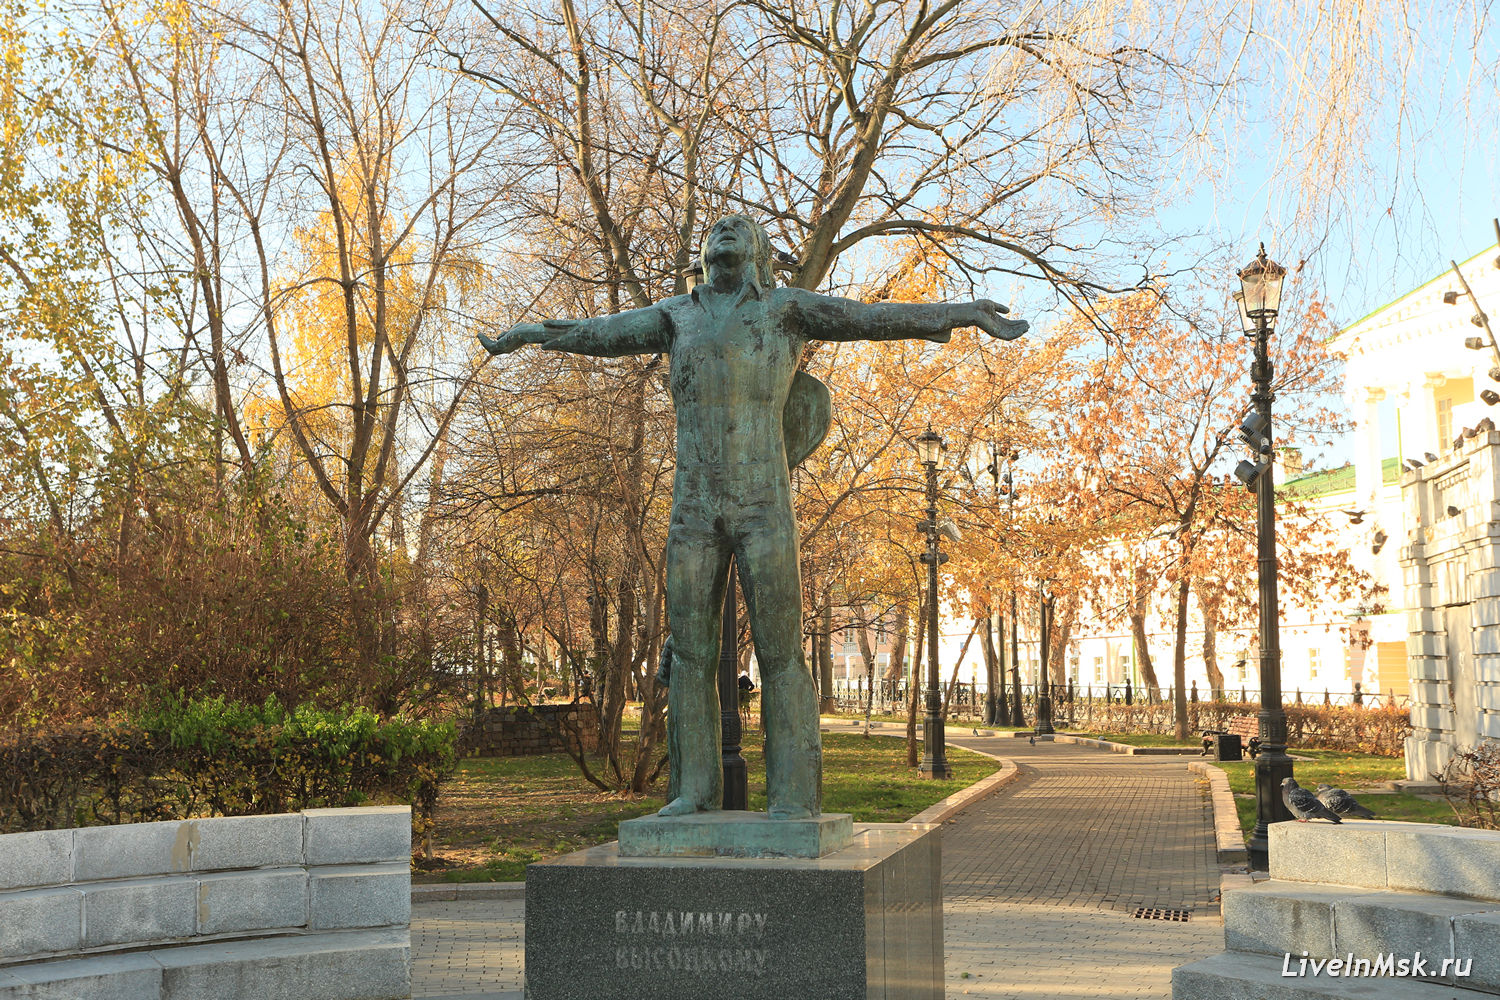 Памятник Высоцкому, фото 2018 года